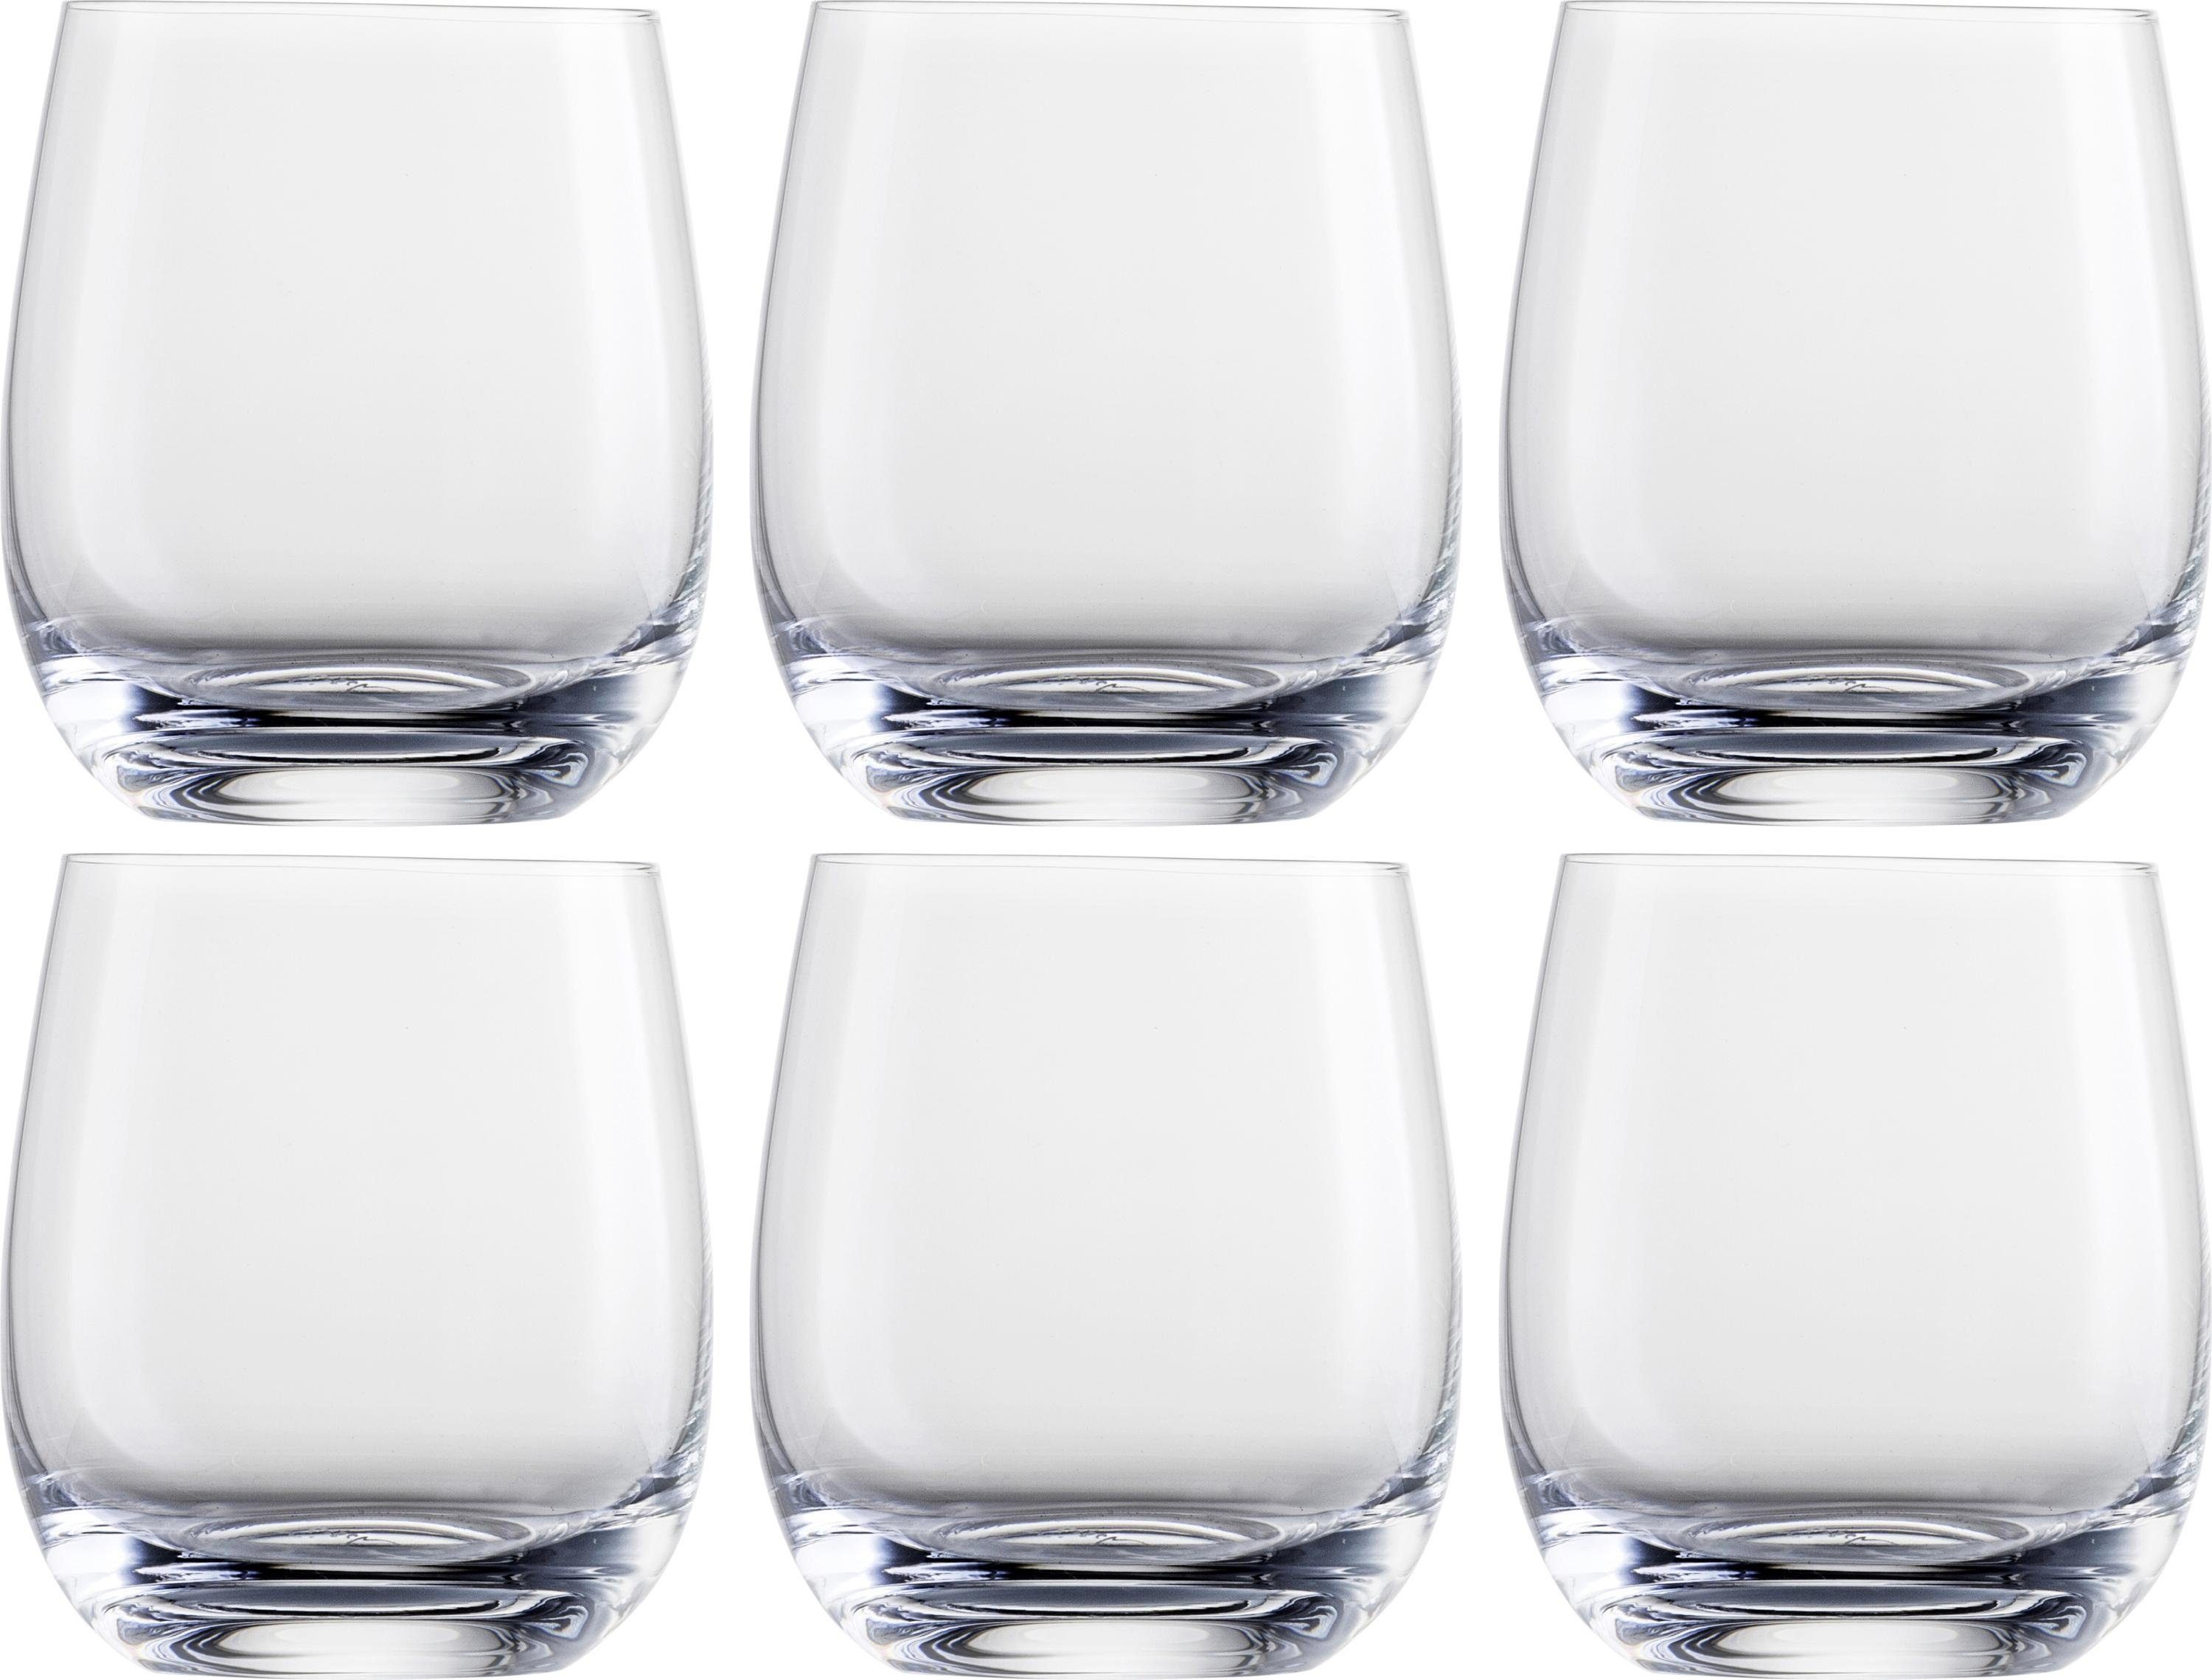 Eisch Whiskyglas, Kristallglas, bleifrei, 360 ml, 6-teilig, Formschön, für  viele Getränke geeignet